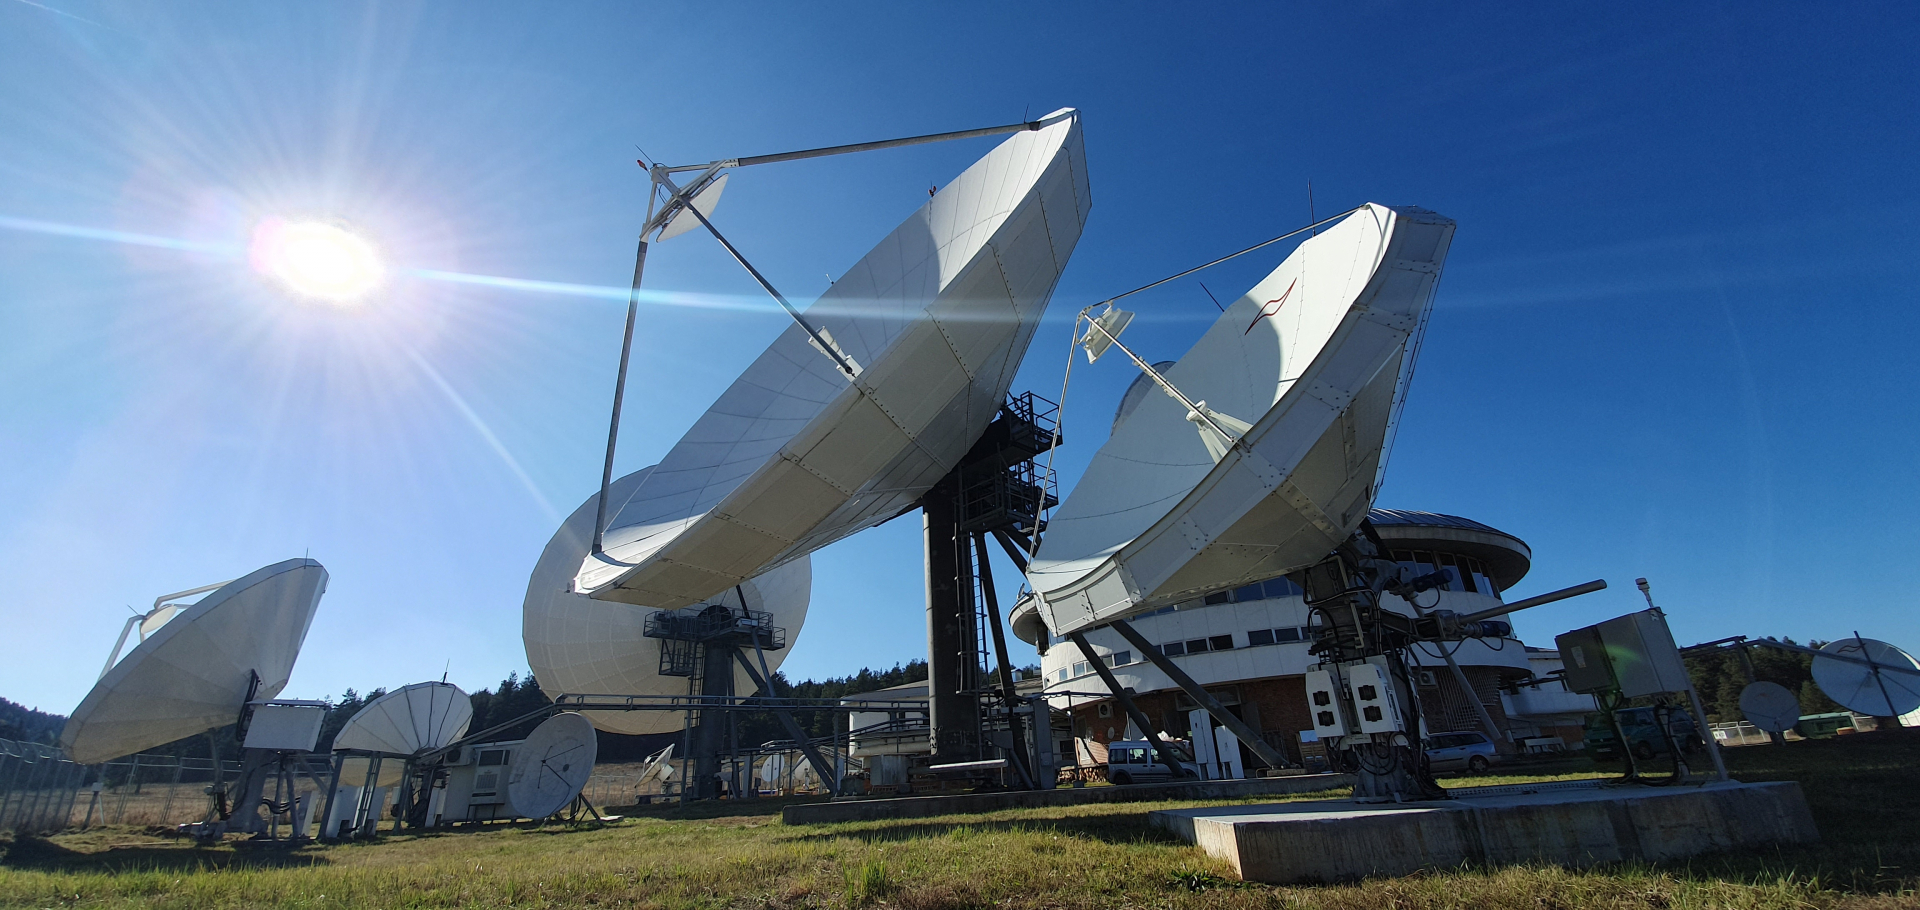 Световната телепорт асоциация отличи сателитна станция „Плана“ на Vivacom със сертификат Tier 4